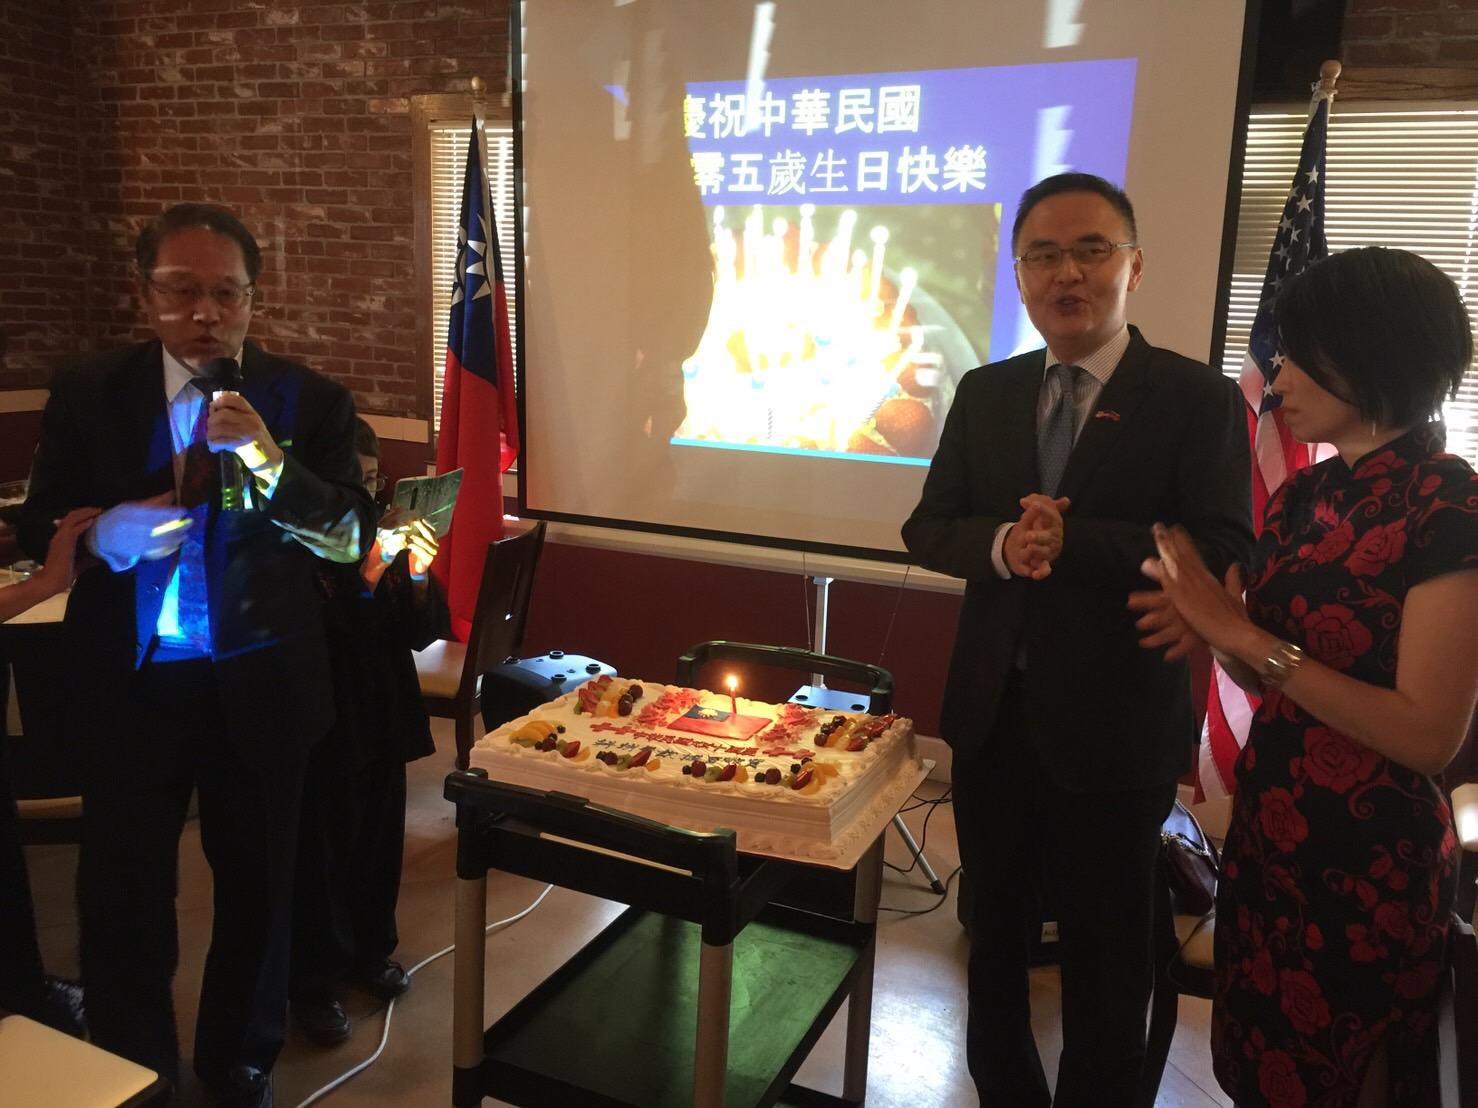 張處長夫婦應邀合切慶祝中華民國105年國慶蛋糕